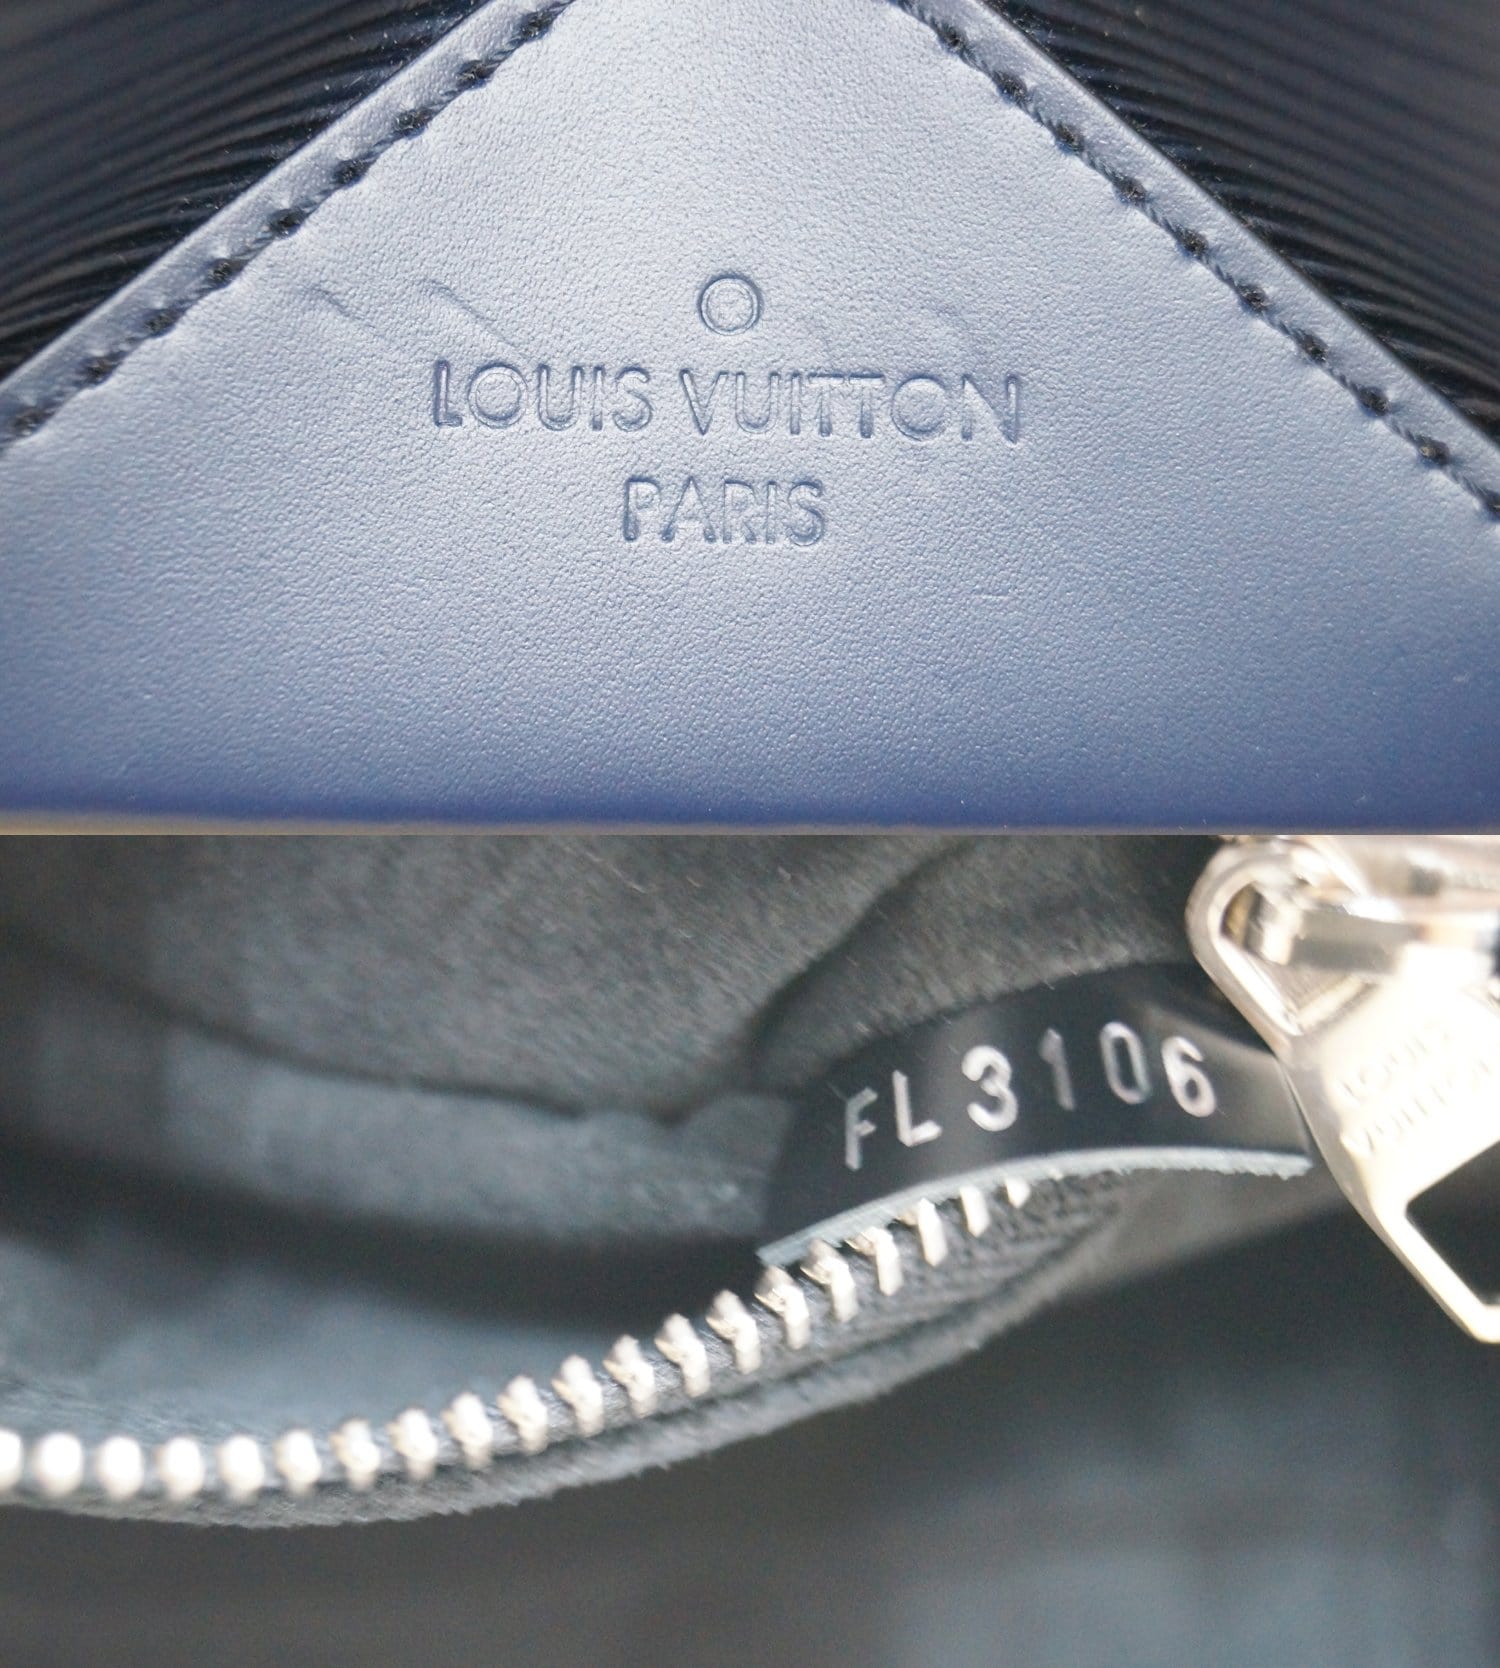 Louis Vuitton - Kleber MM Epi Leather Noir